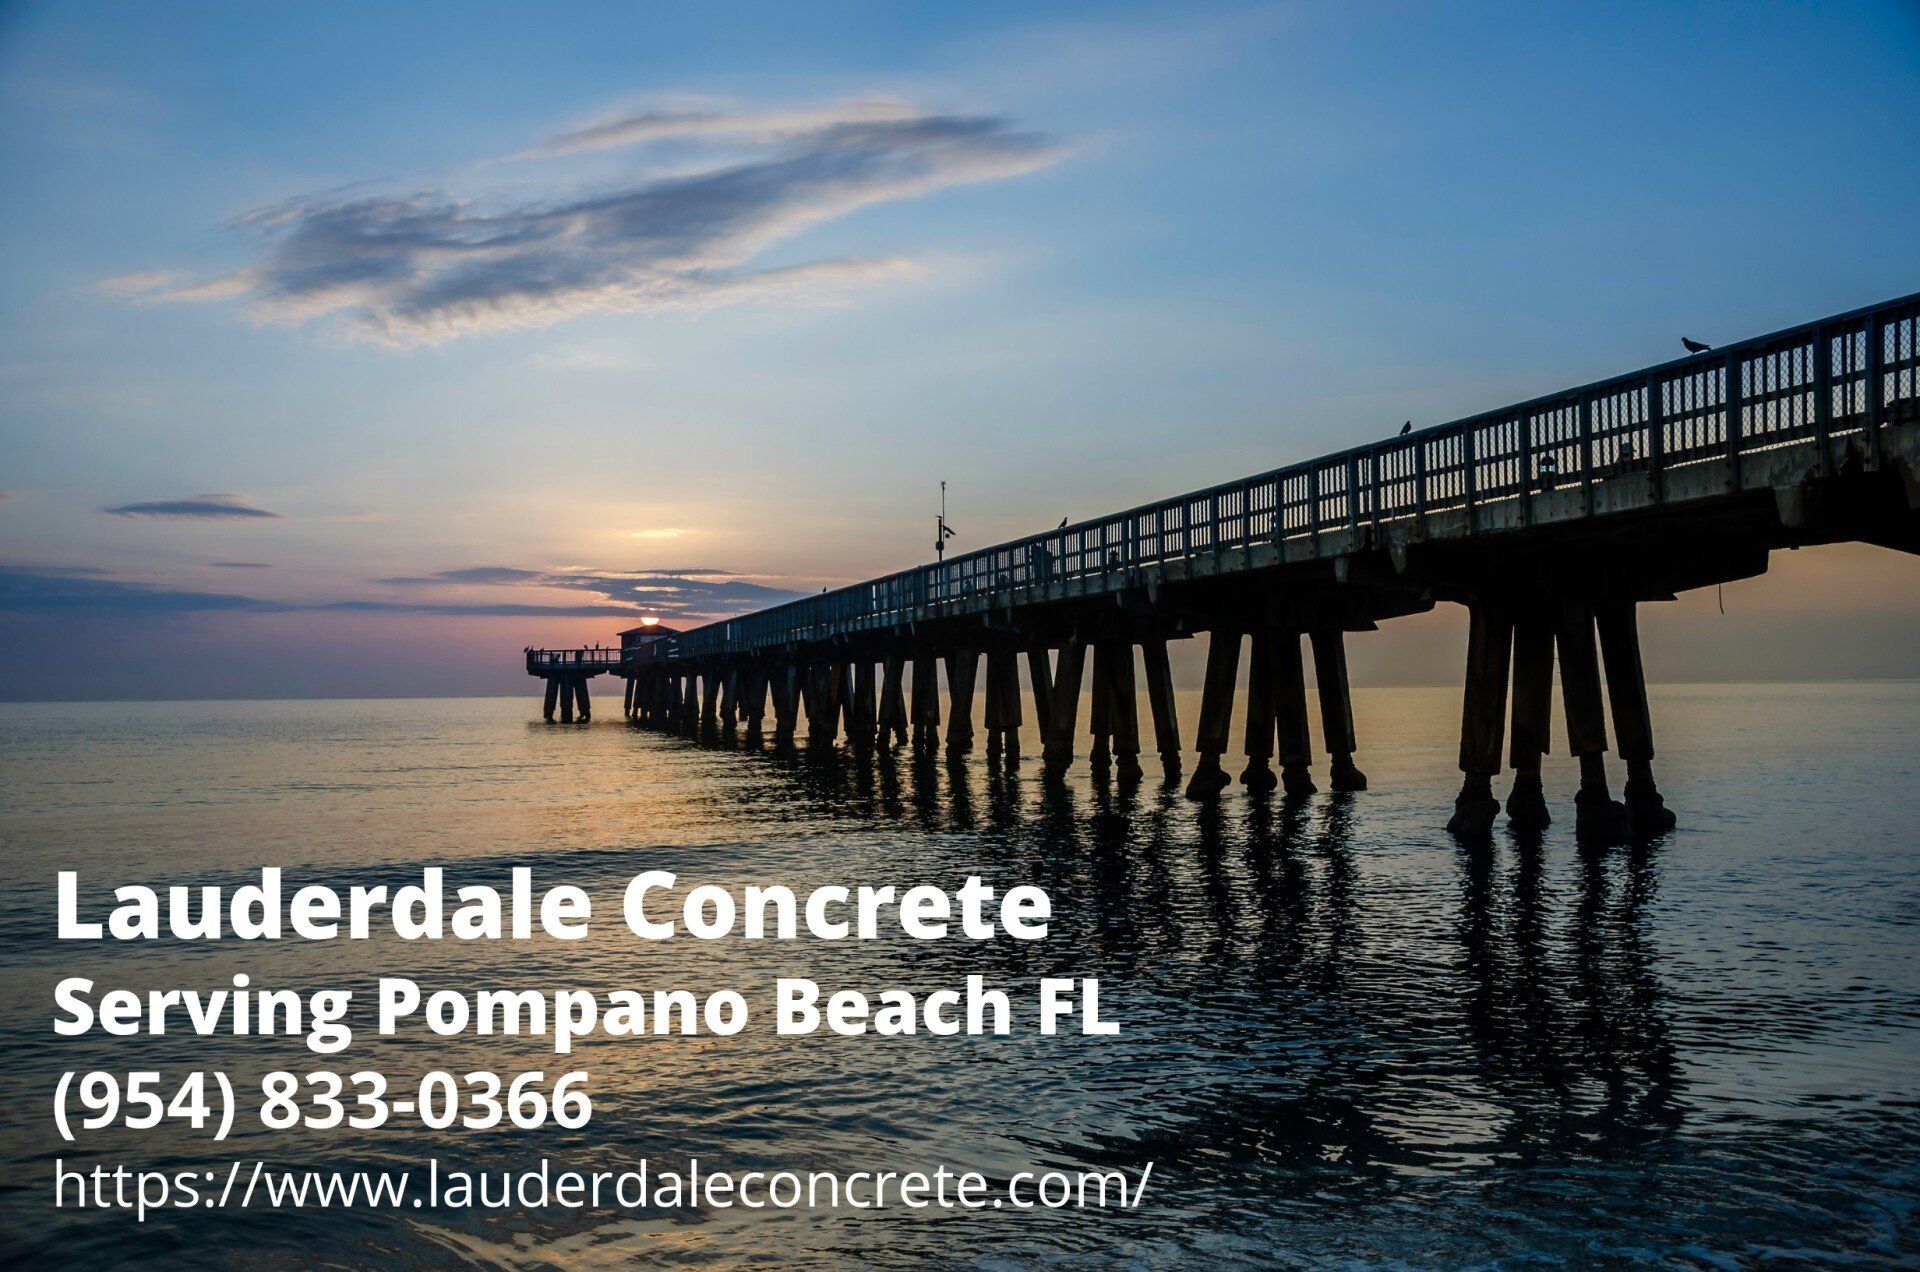 Pompano Beach Pier. Text by Lauderdale Concrete - a contracting service provider in Pompano Beach FL